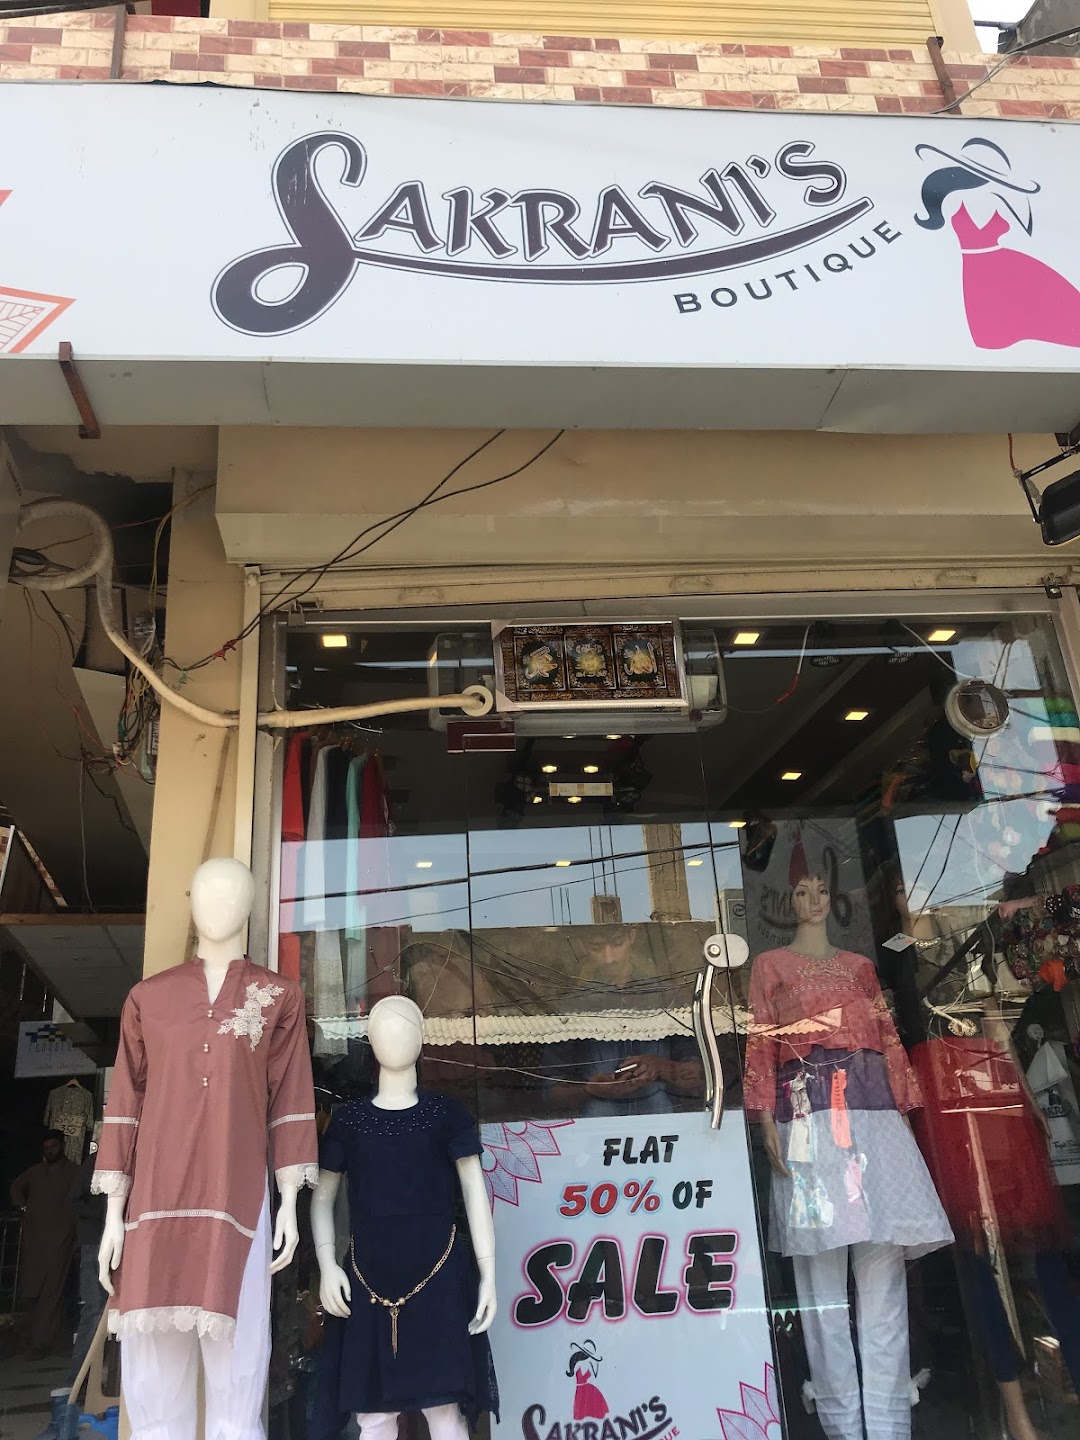 Sakranis Boutique